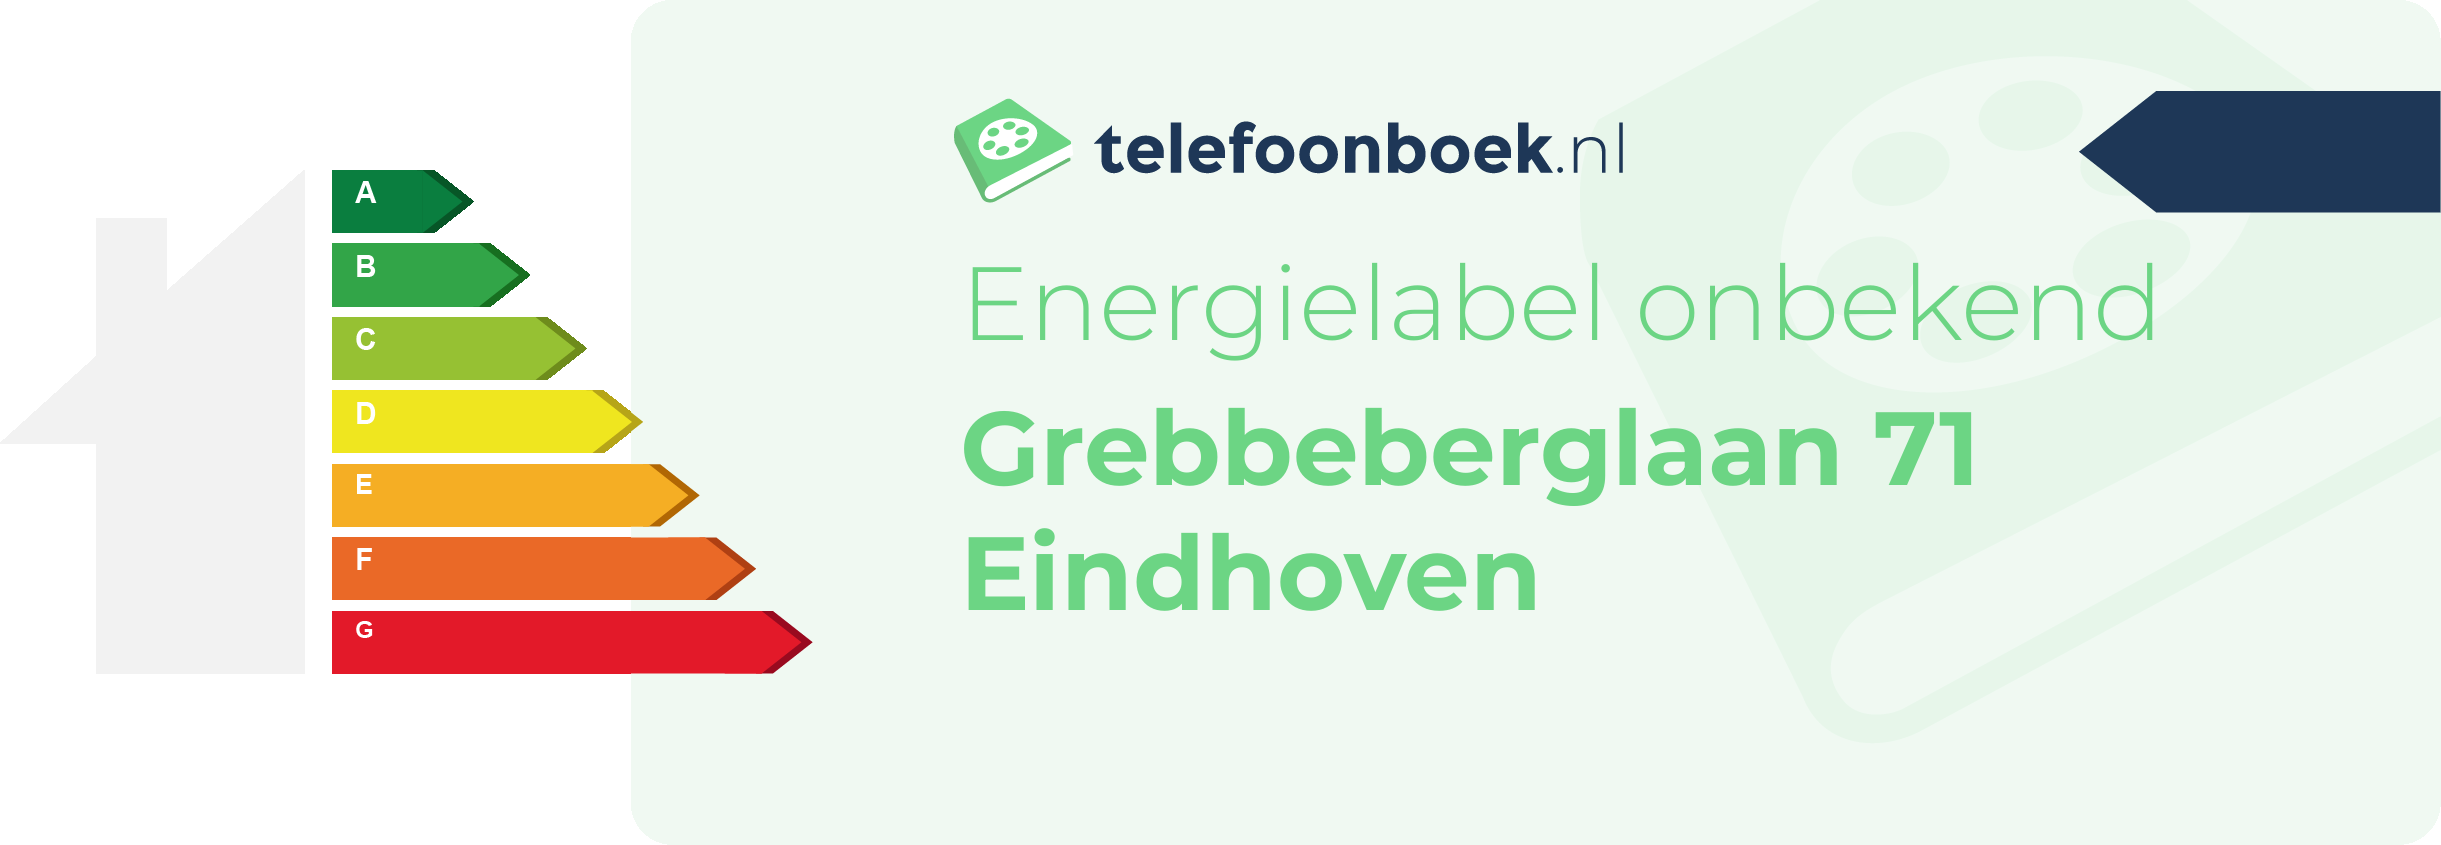 Energielabel Grebbeberglaan 71 Eindhoven